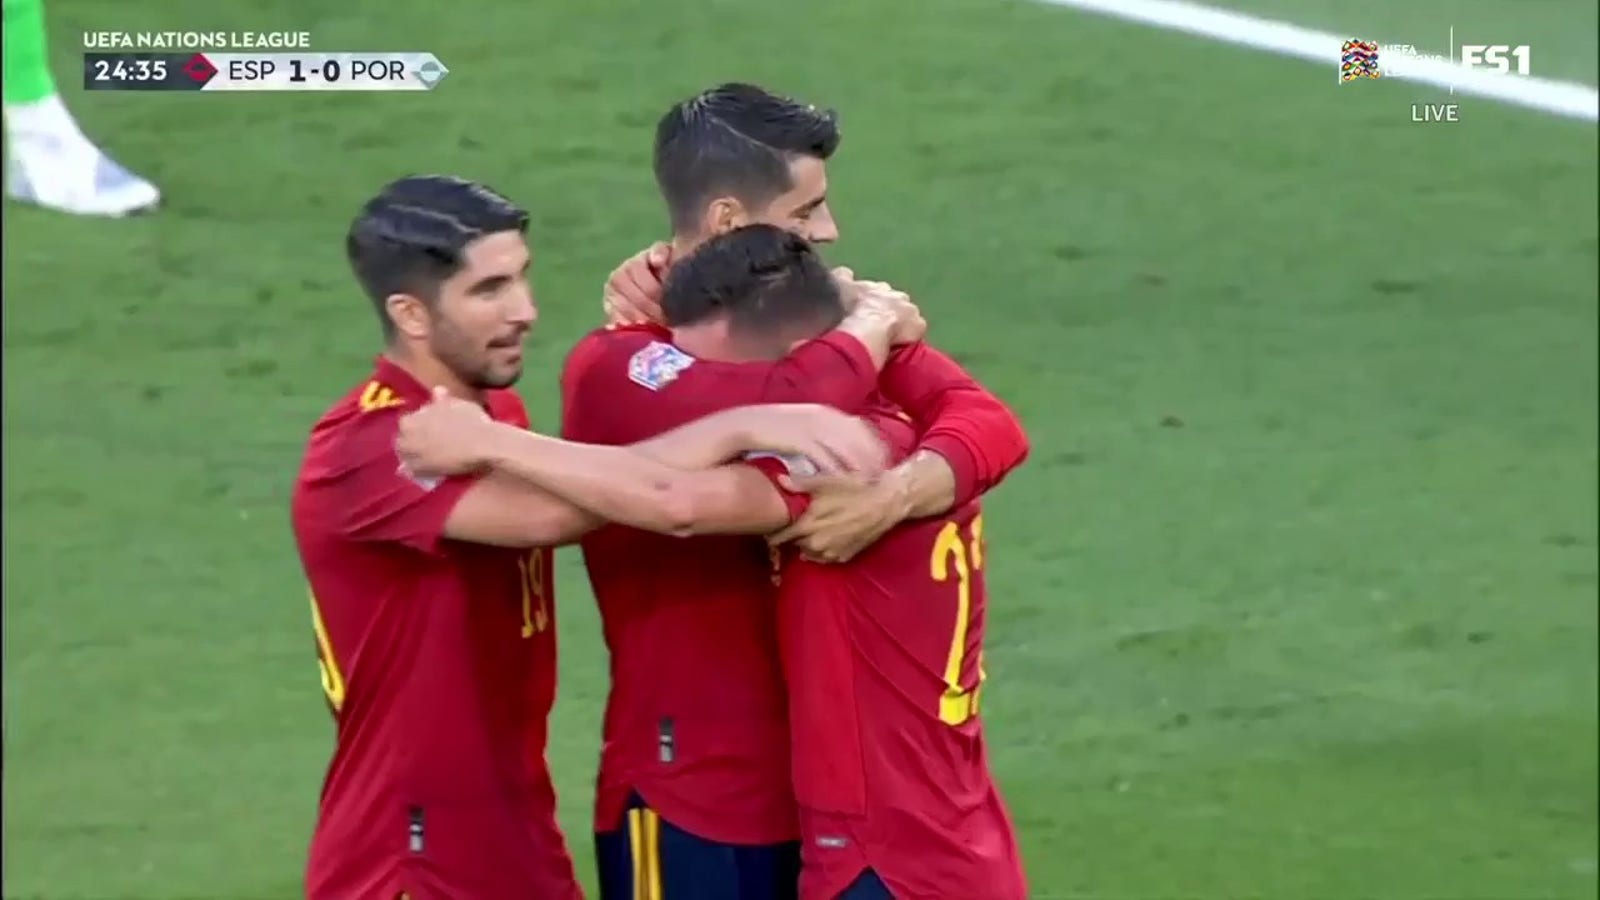 Álvaro Morata puts Spain ahead of Portugal, 1-0